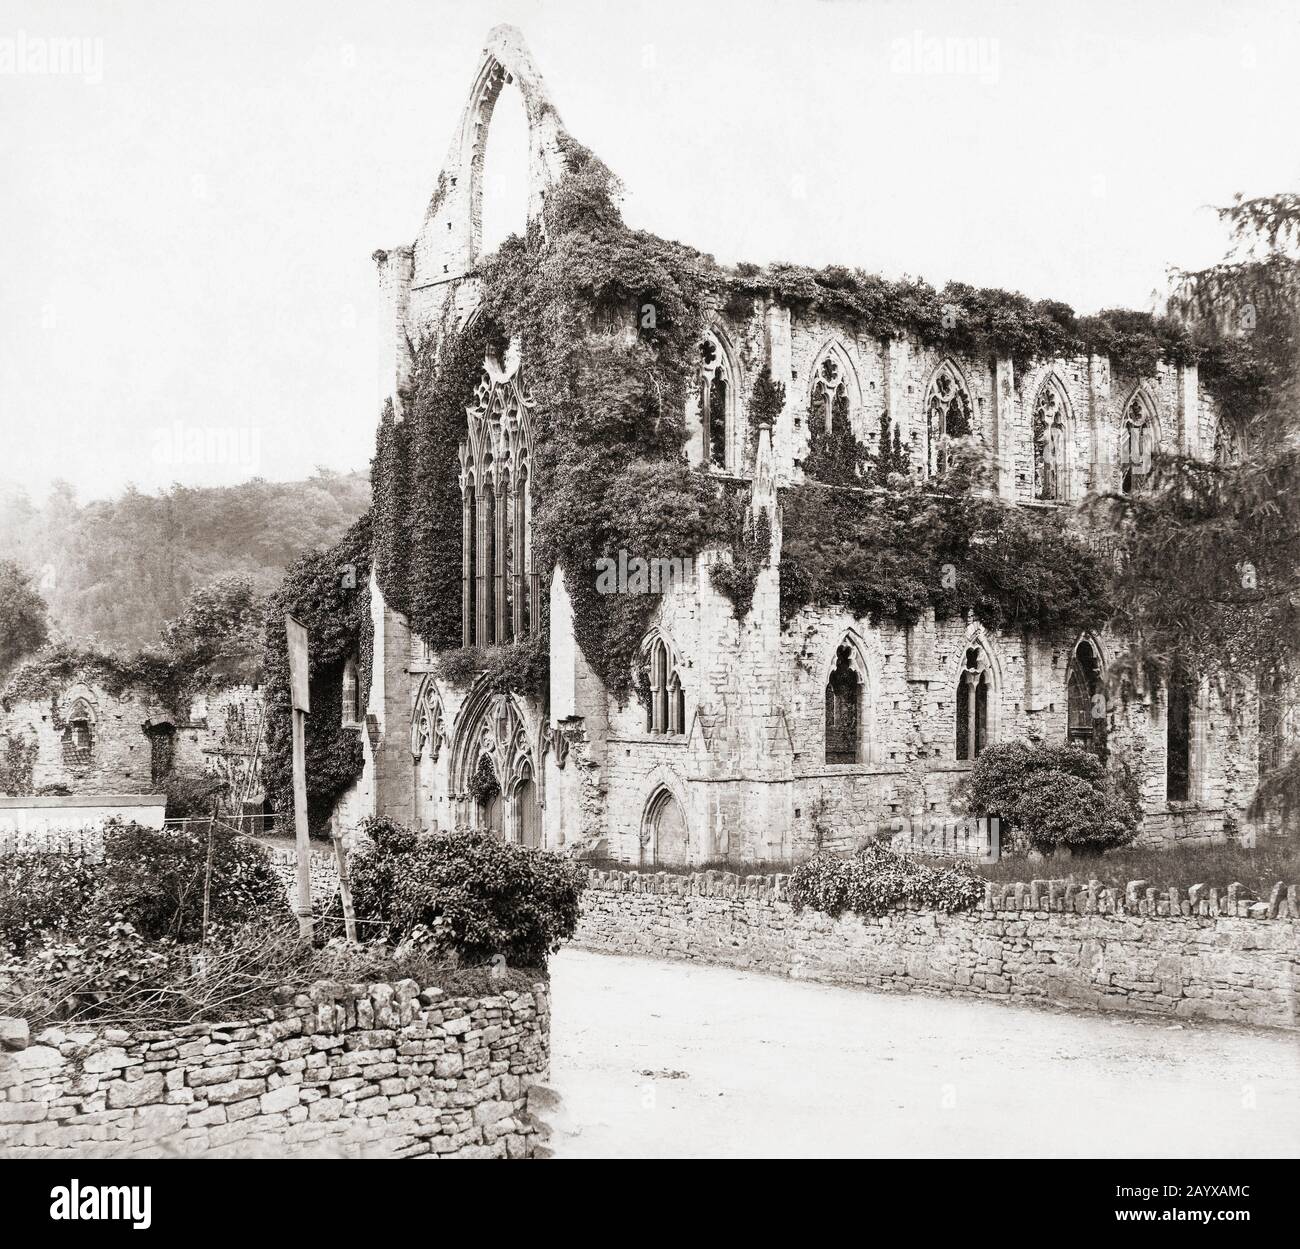 Abbaye De Tintern, Monmoushire, Pays De Galles, Royaume-Uni. L'abbaye a été fondée en 1131. Après une photo anonyme prise au milieu du XIXe siècle. Banque D'Images